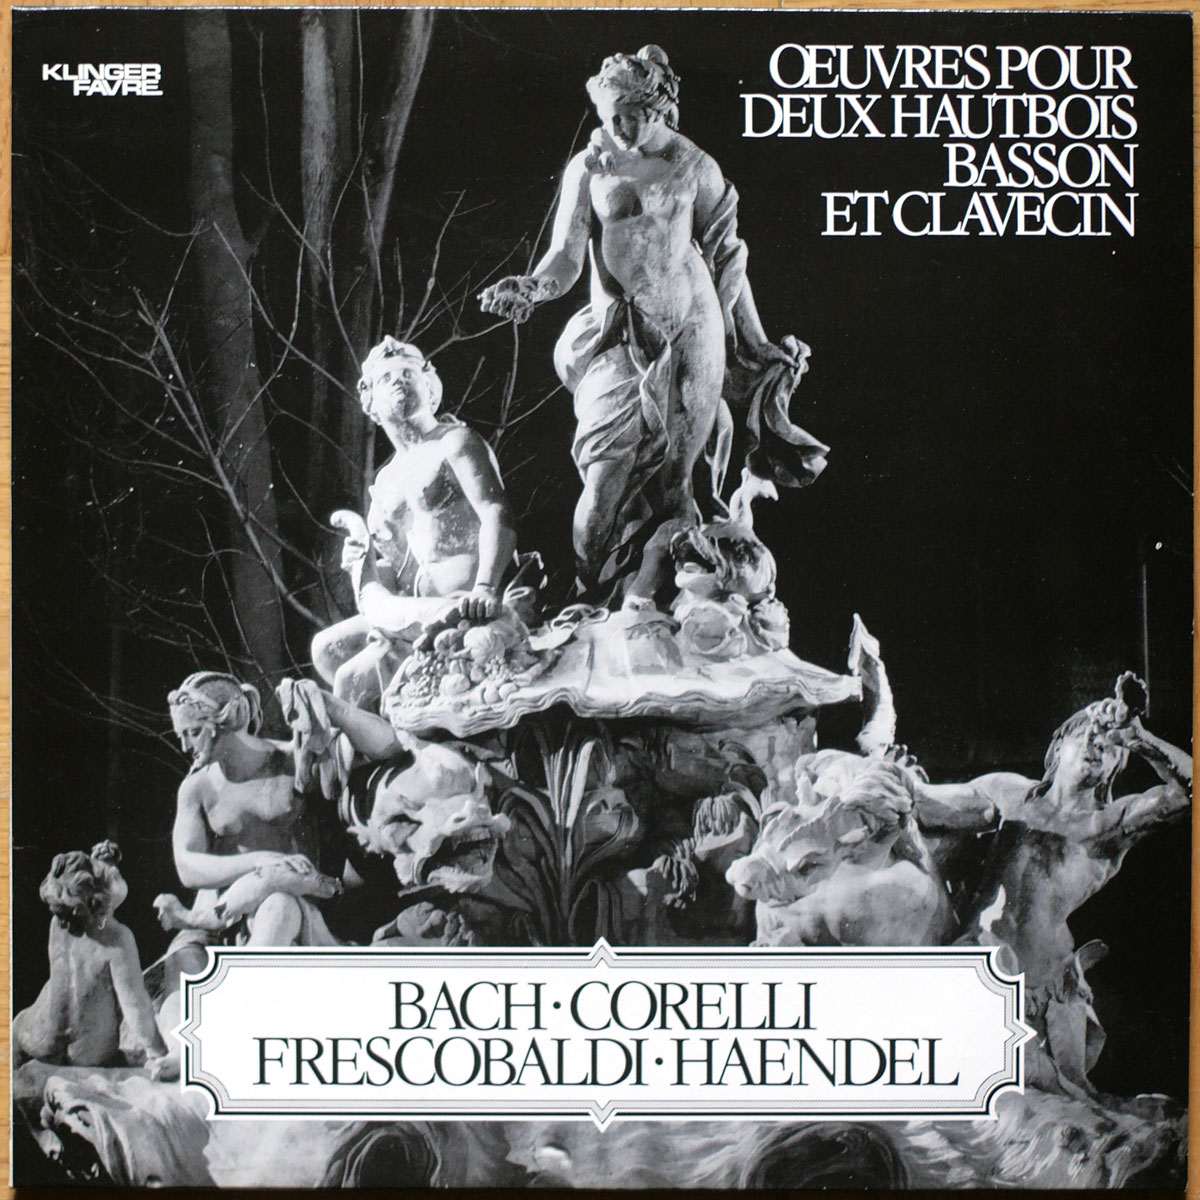 Bach • Corelli • Frecobaldi • Haendel • Œuvres pour hautbois & basson & clavecin • Sonatas for oboe & bassoon & harpsichord • Klinger-Favre SCA 047 • Riveaux • Gester • Baudry • Haerrig